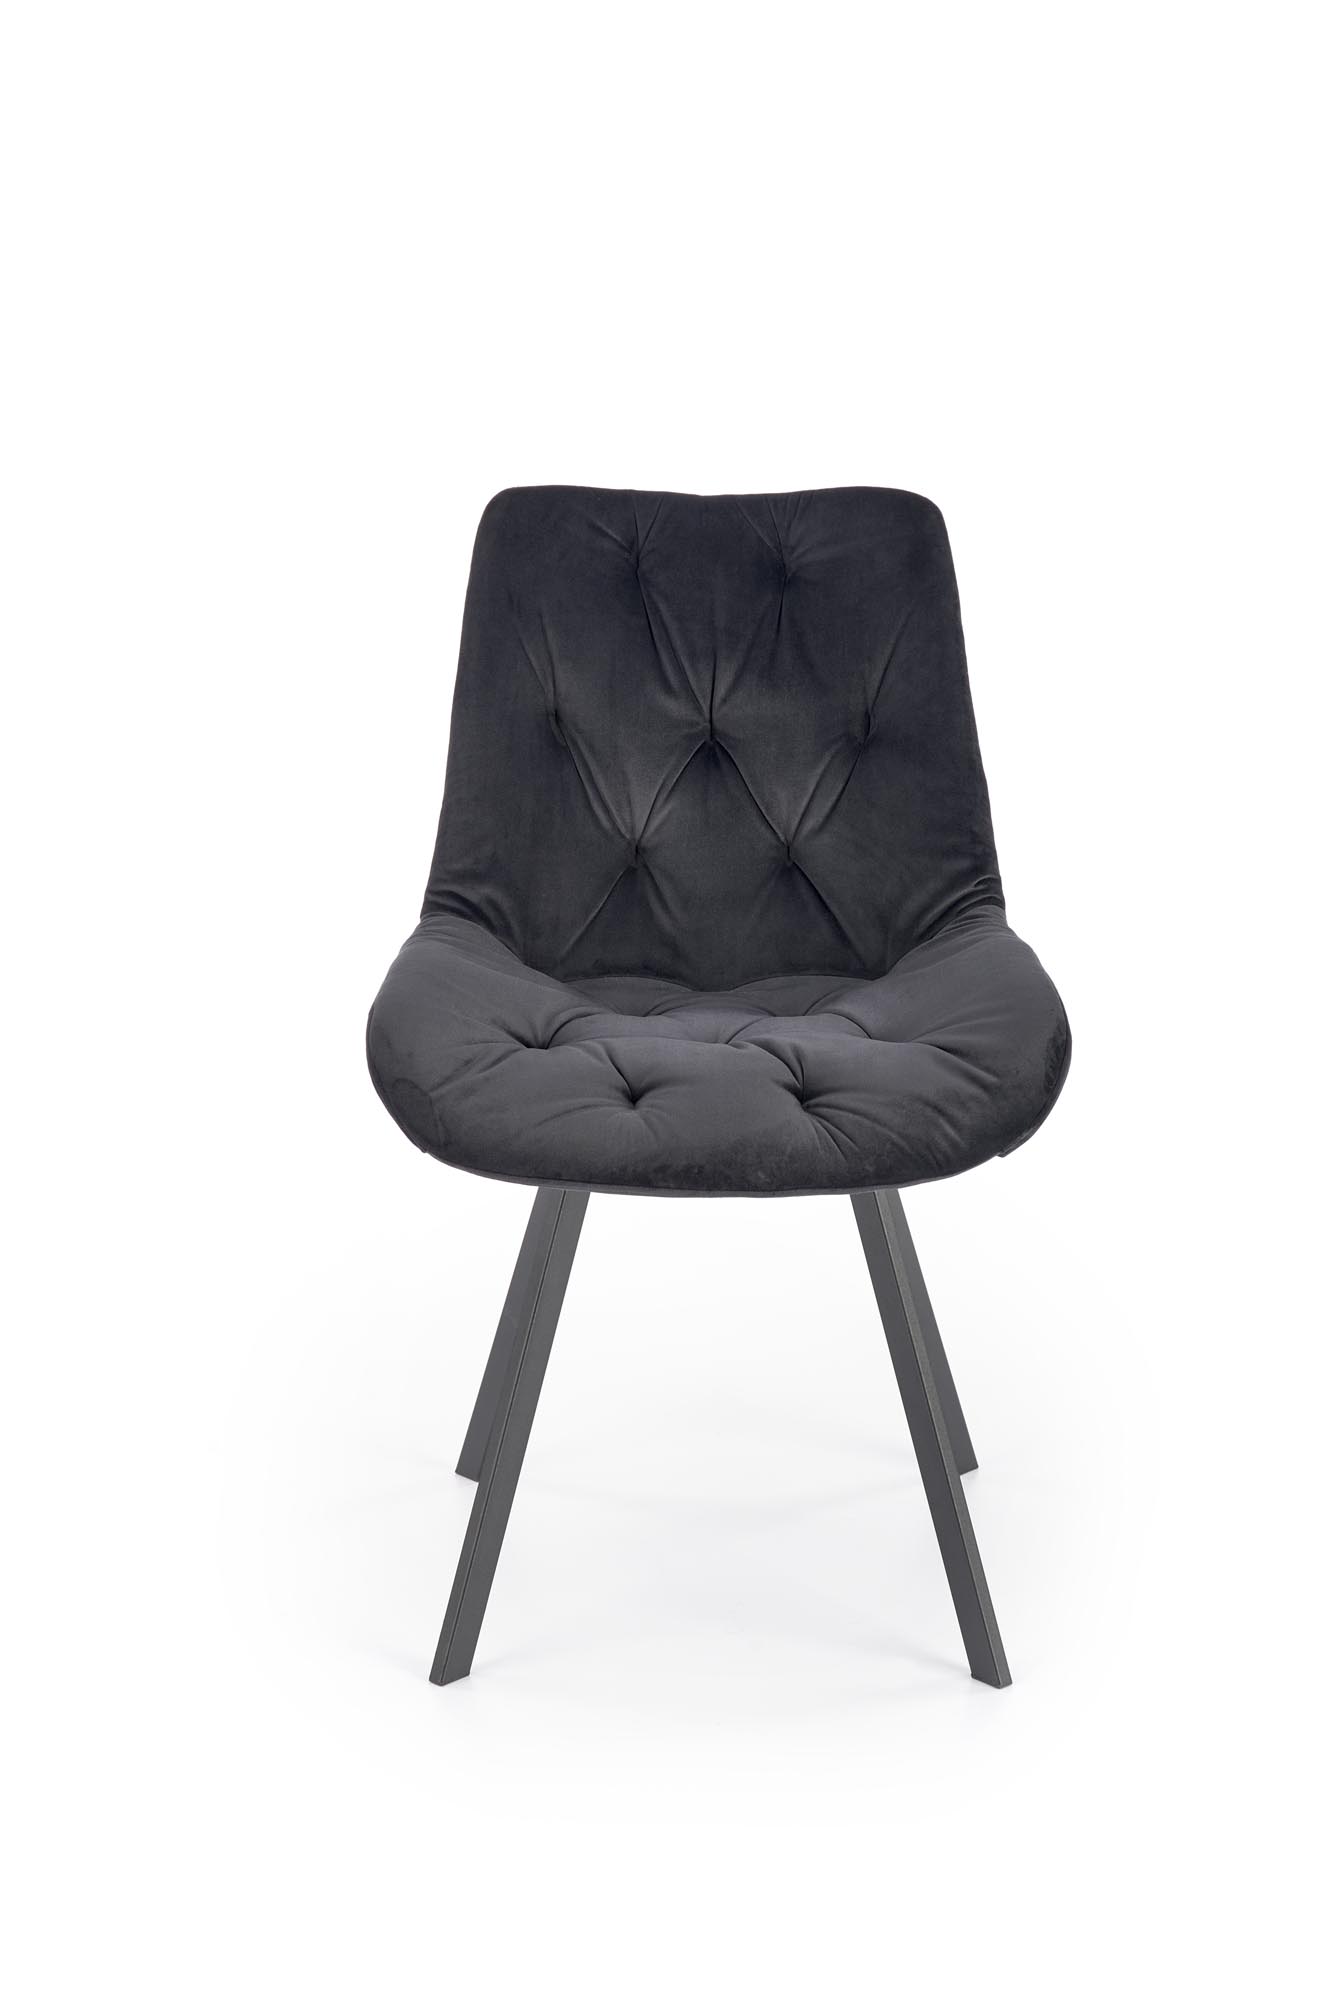 K519 Židle Černý Židle čalouněné k519 - Černý